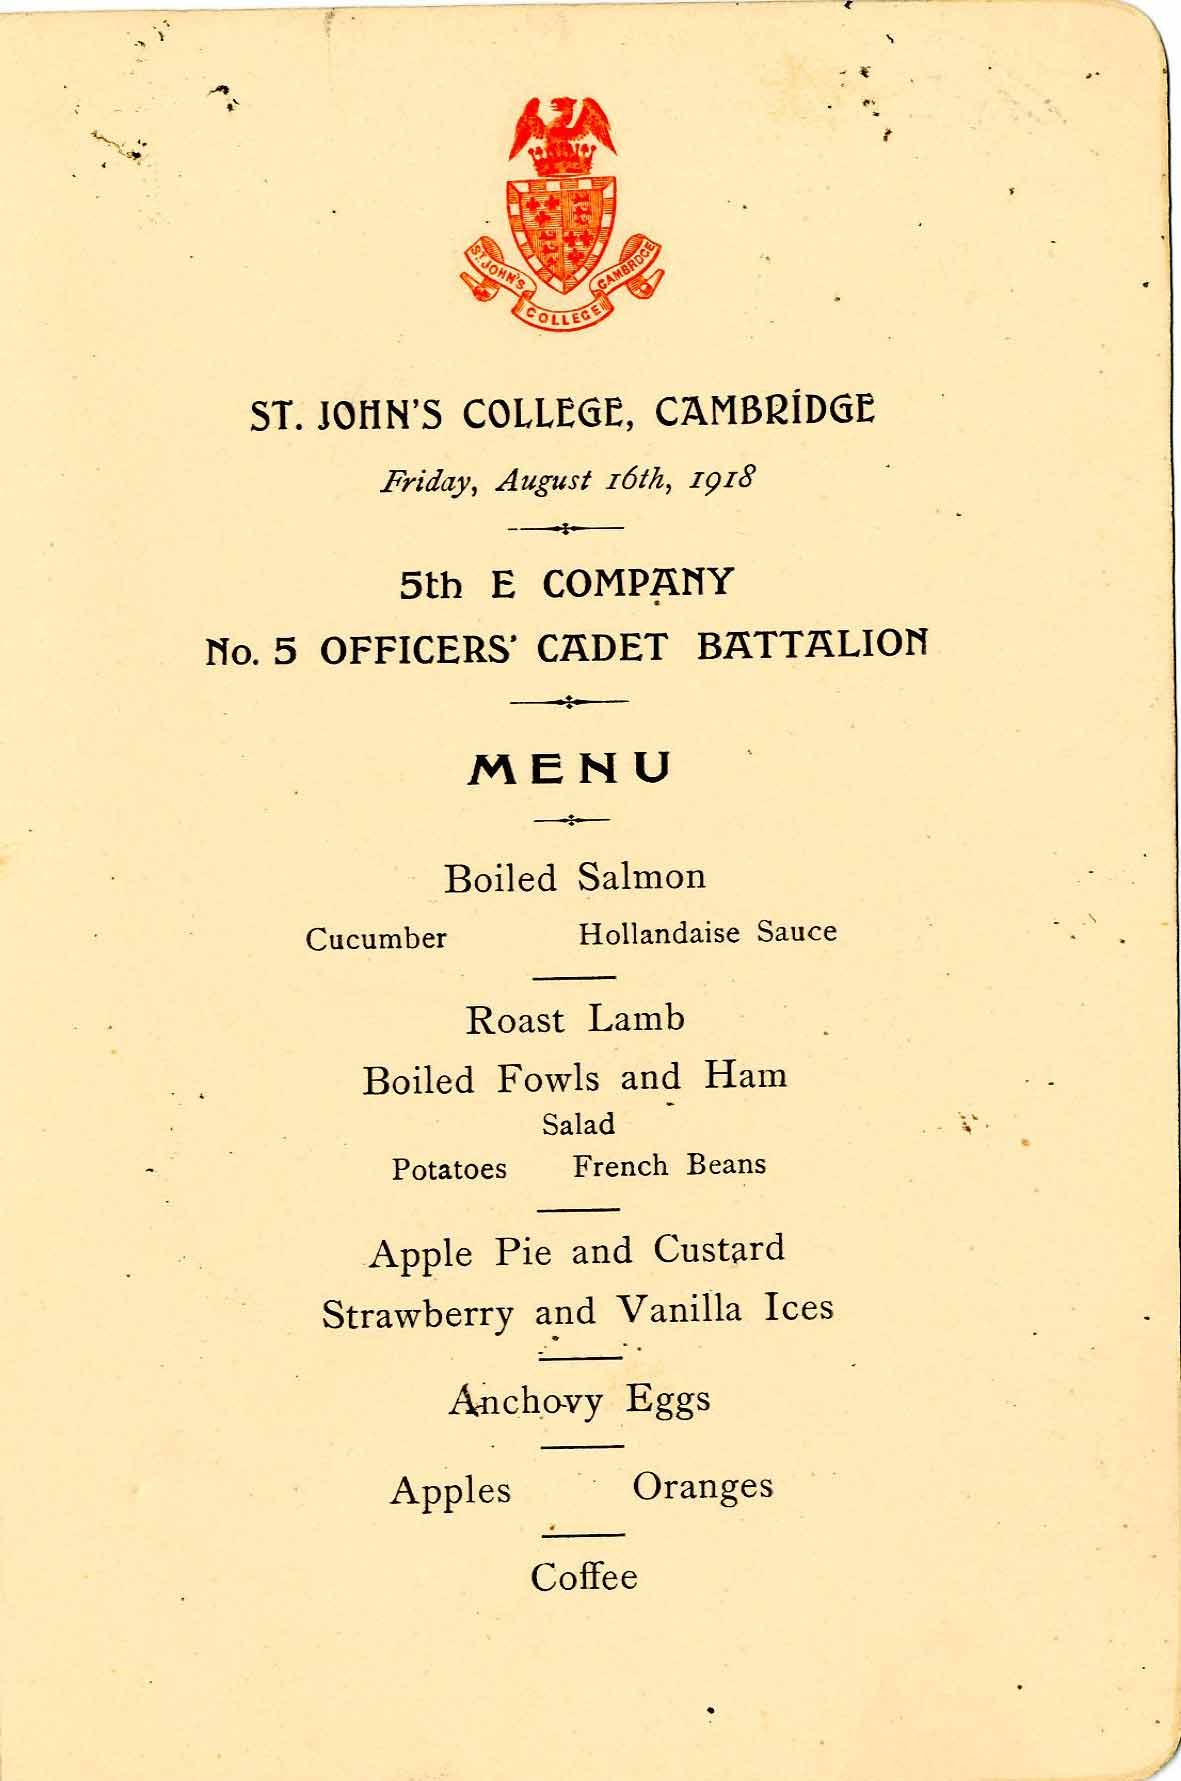 Officers' Cadet dinner menu